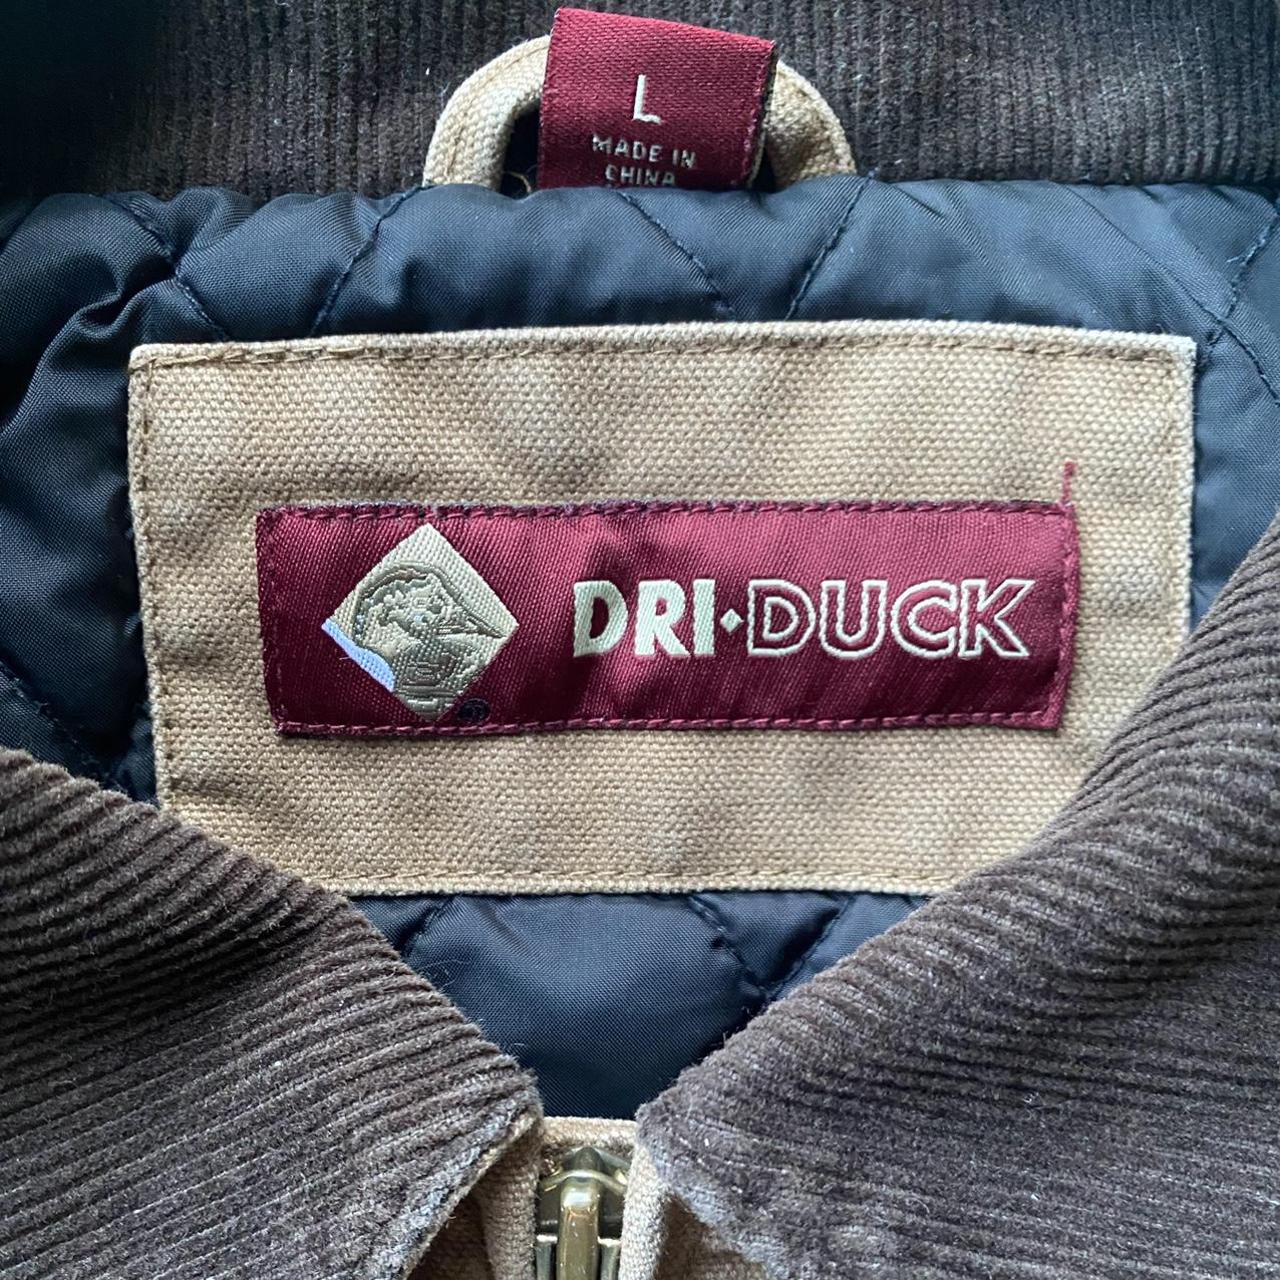 Product Image 2 - Carhartt Detroit jacket style dri